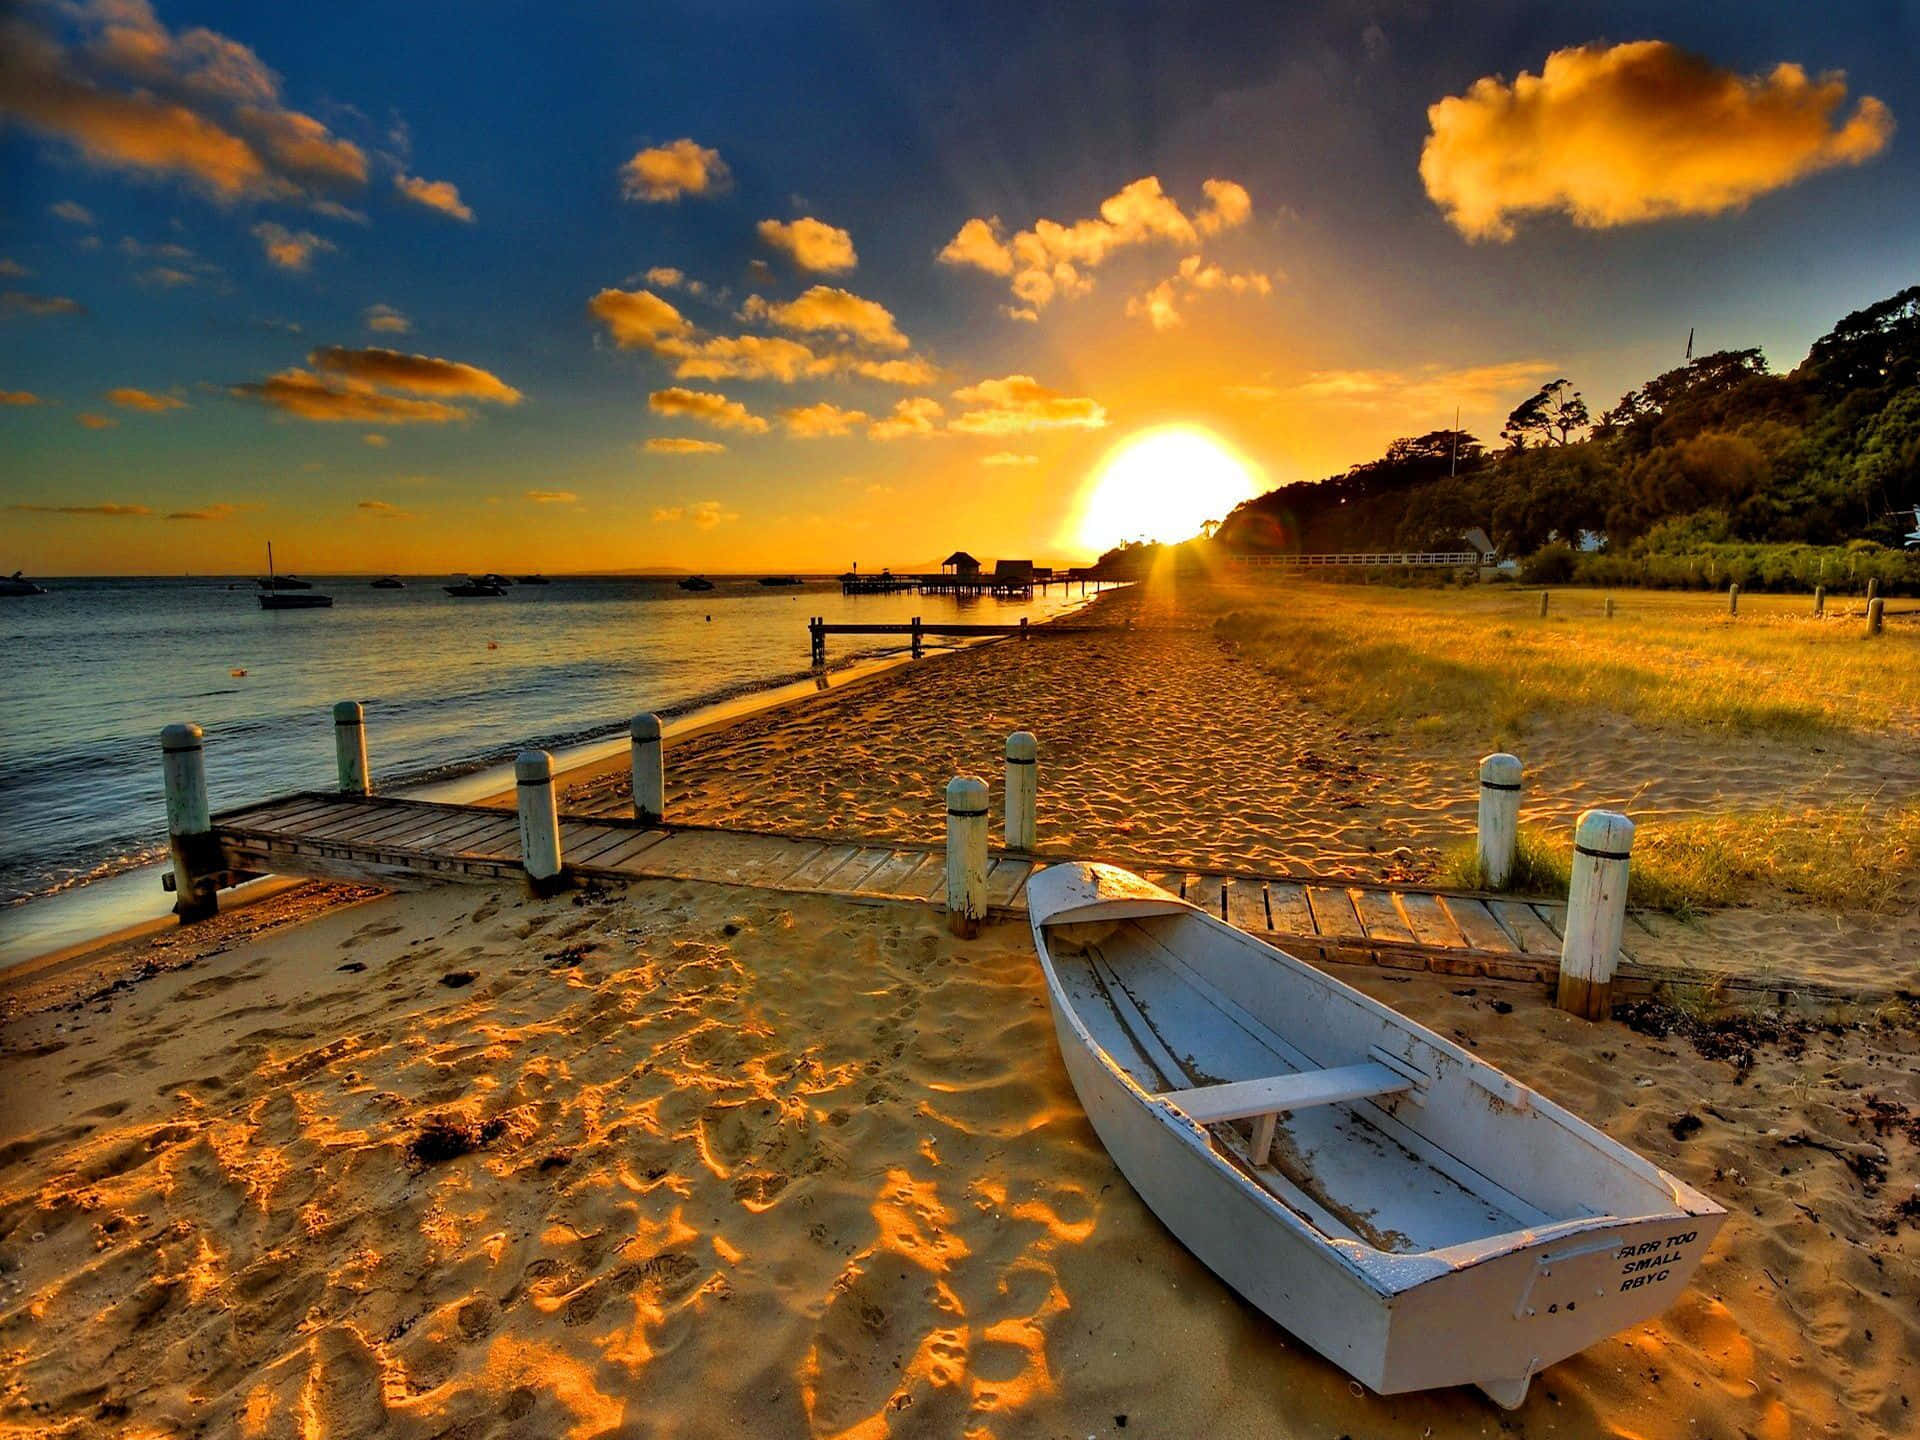 Nyd skønheden af et solnedgang på stranden. Wallpaper